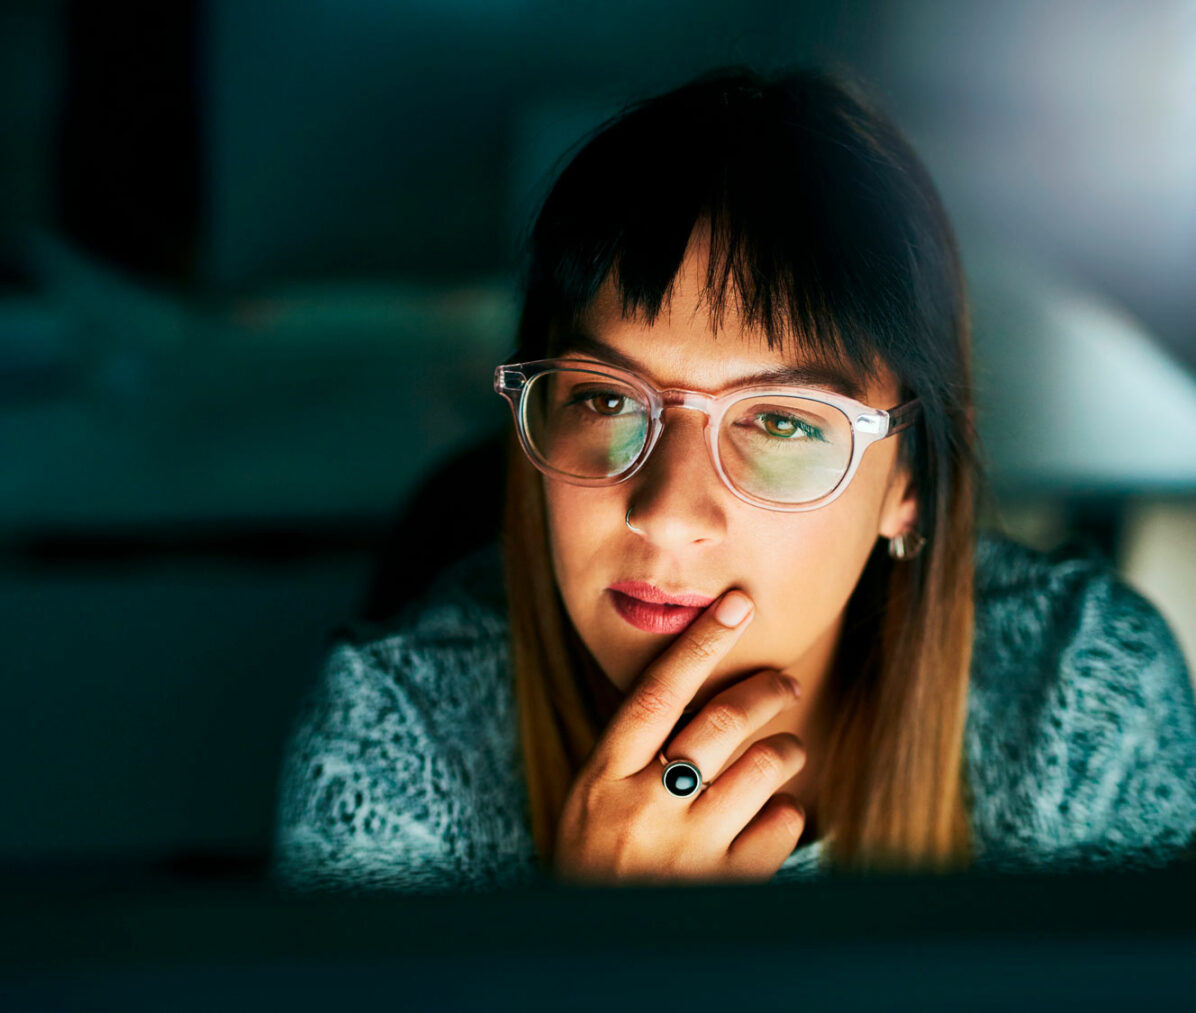 ung kvinne med langt hår og briller sitter i mørket og ser på opplyst dataskjerm